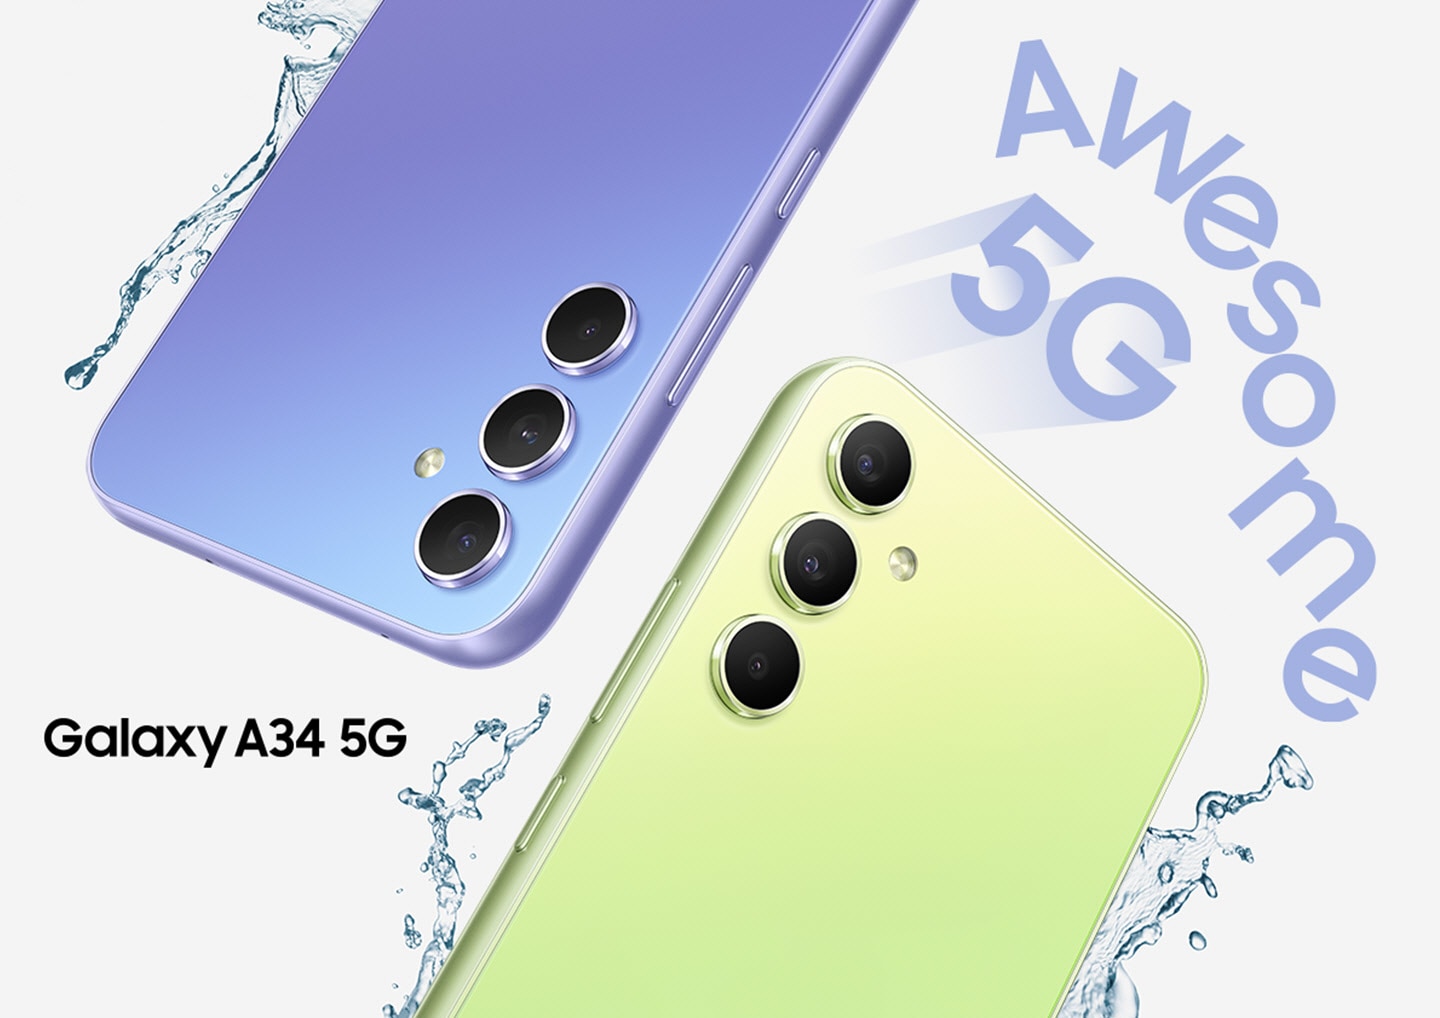 Dva Galaxy A34 5G pokazuju svoje gornje polovine stražnjih strana, jedan u boji Awesome ljubičasta, a drugi u boji Awesome limeta. Kapljice vode prskaju oko uređaja 